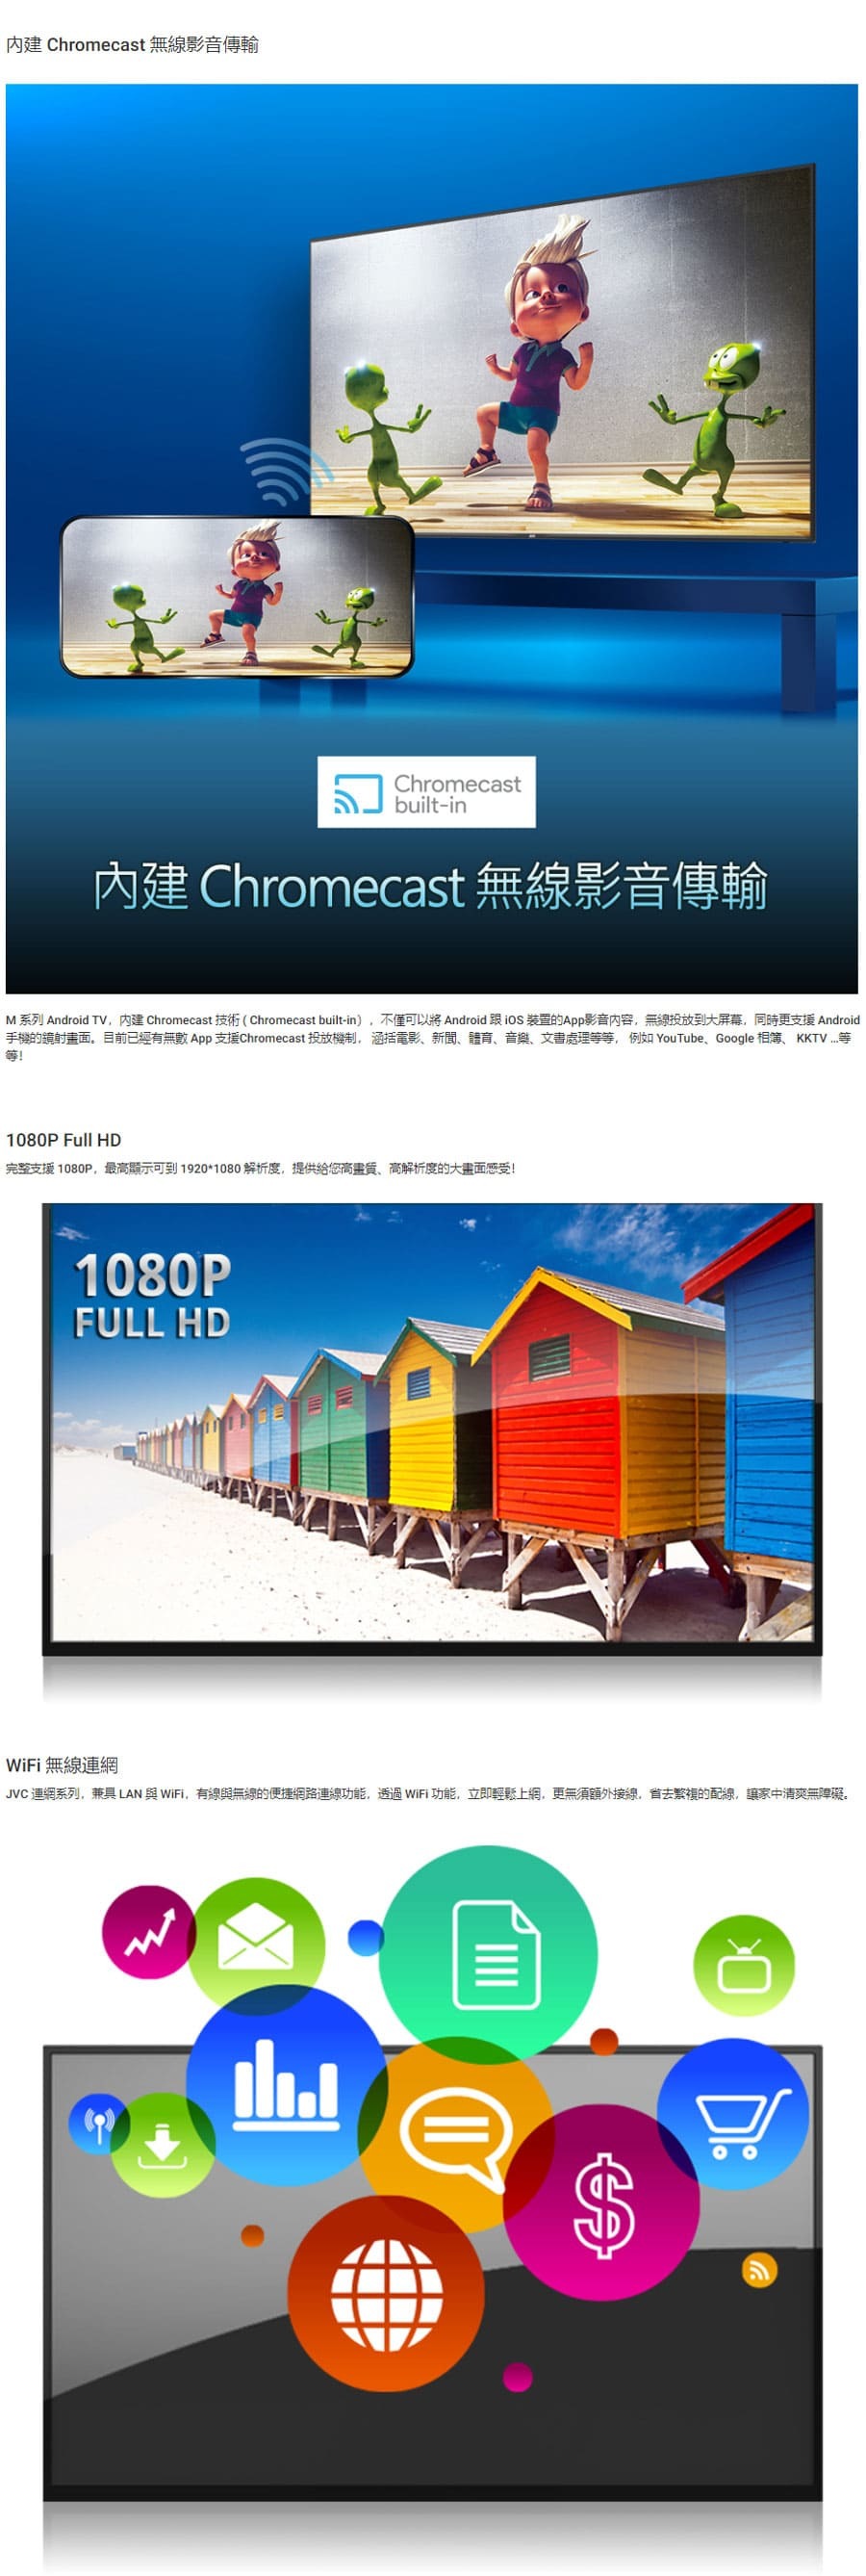 JVC 32M 32吋 Google認證 HD聯網液晶顯示器